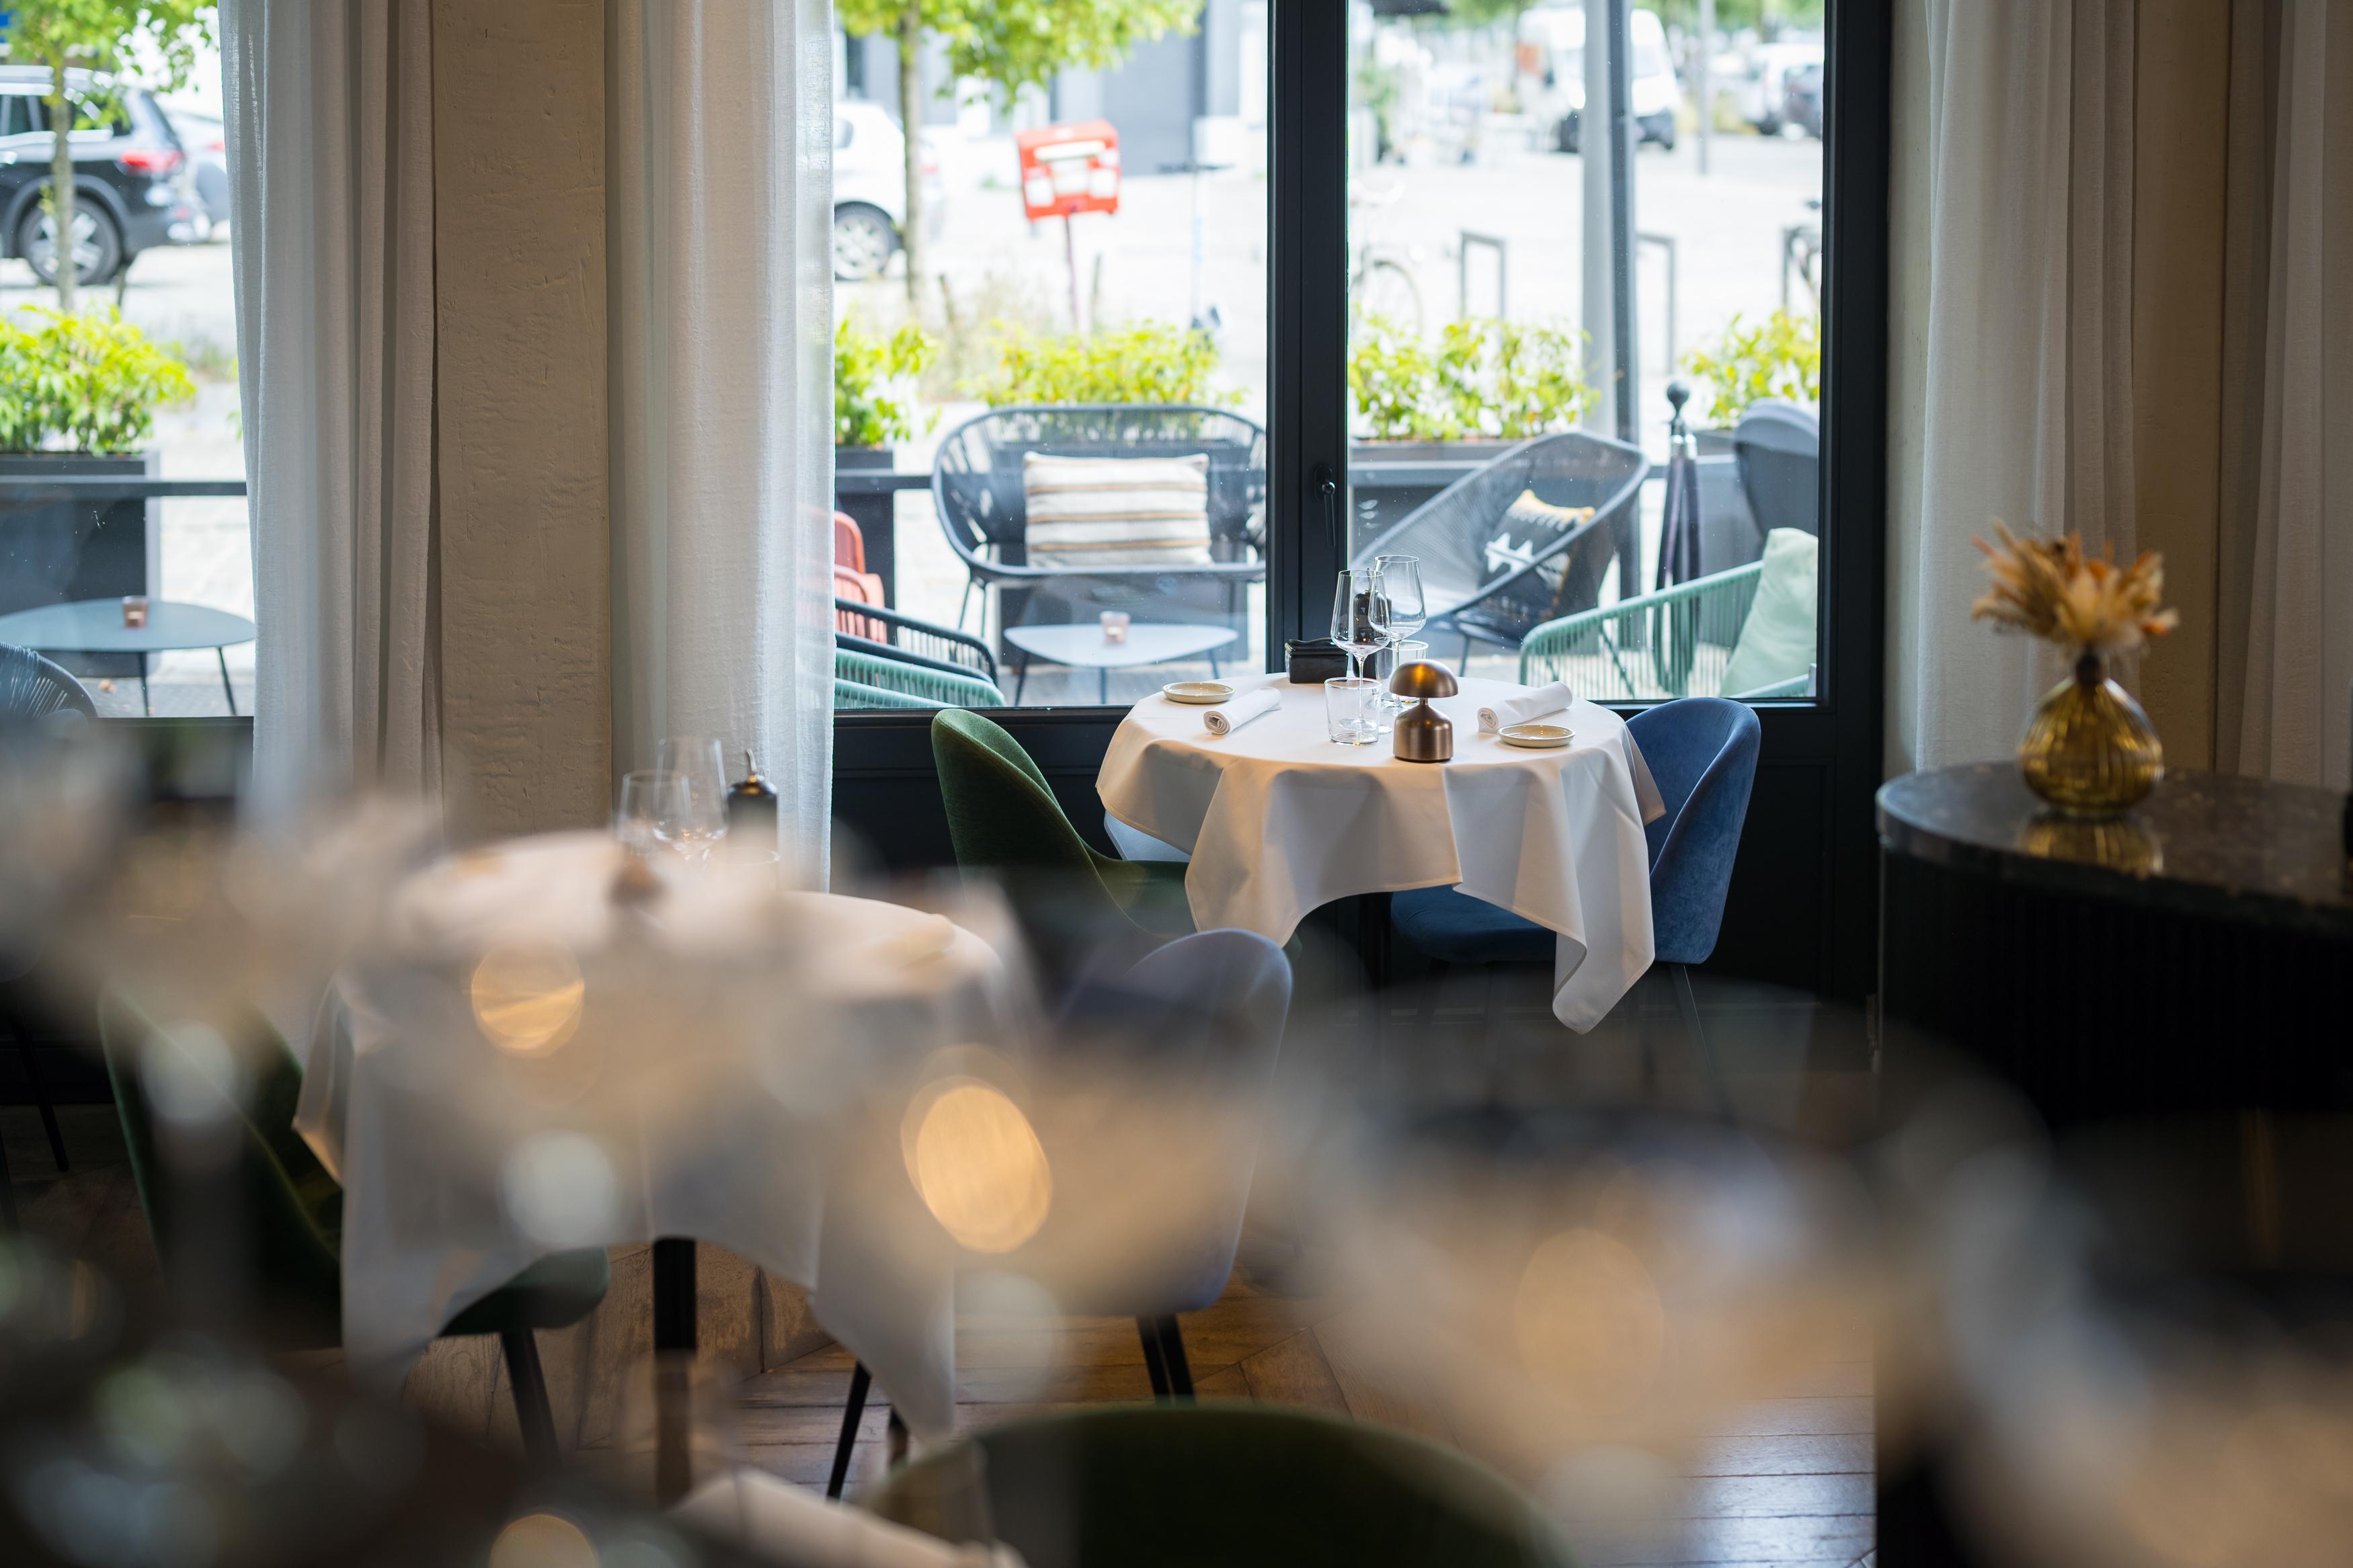 Reserveer een tafel bij U Eat U Sleepn en bereid u voor op een onvergetelijke culinaire ervaring in Antwerpen.\n